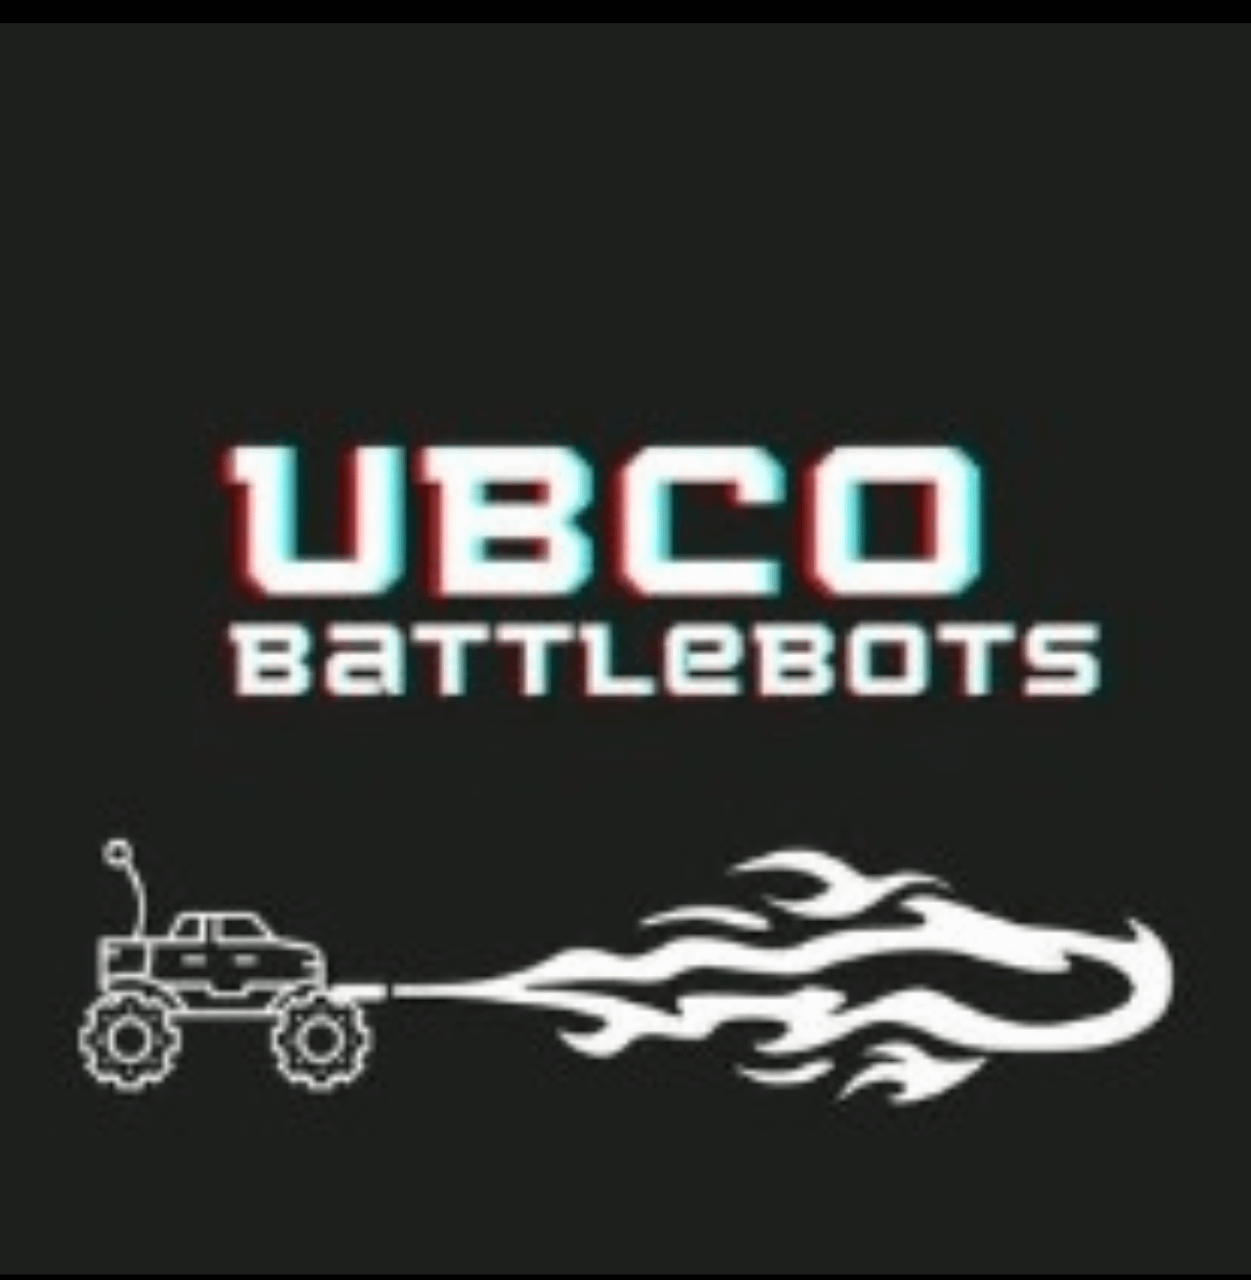 Battlebots Club (BBC)